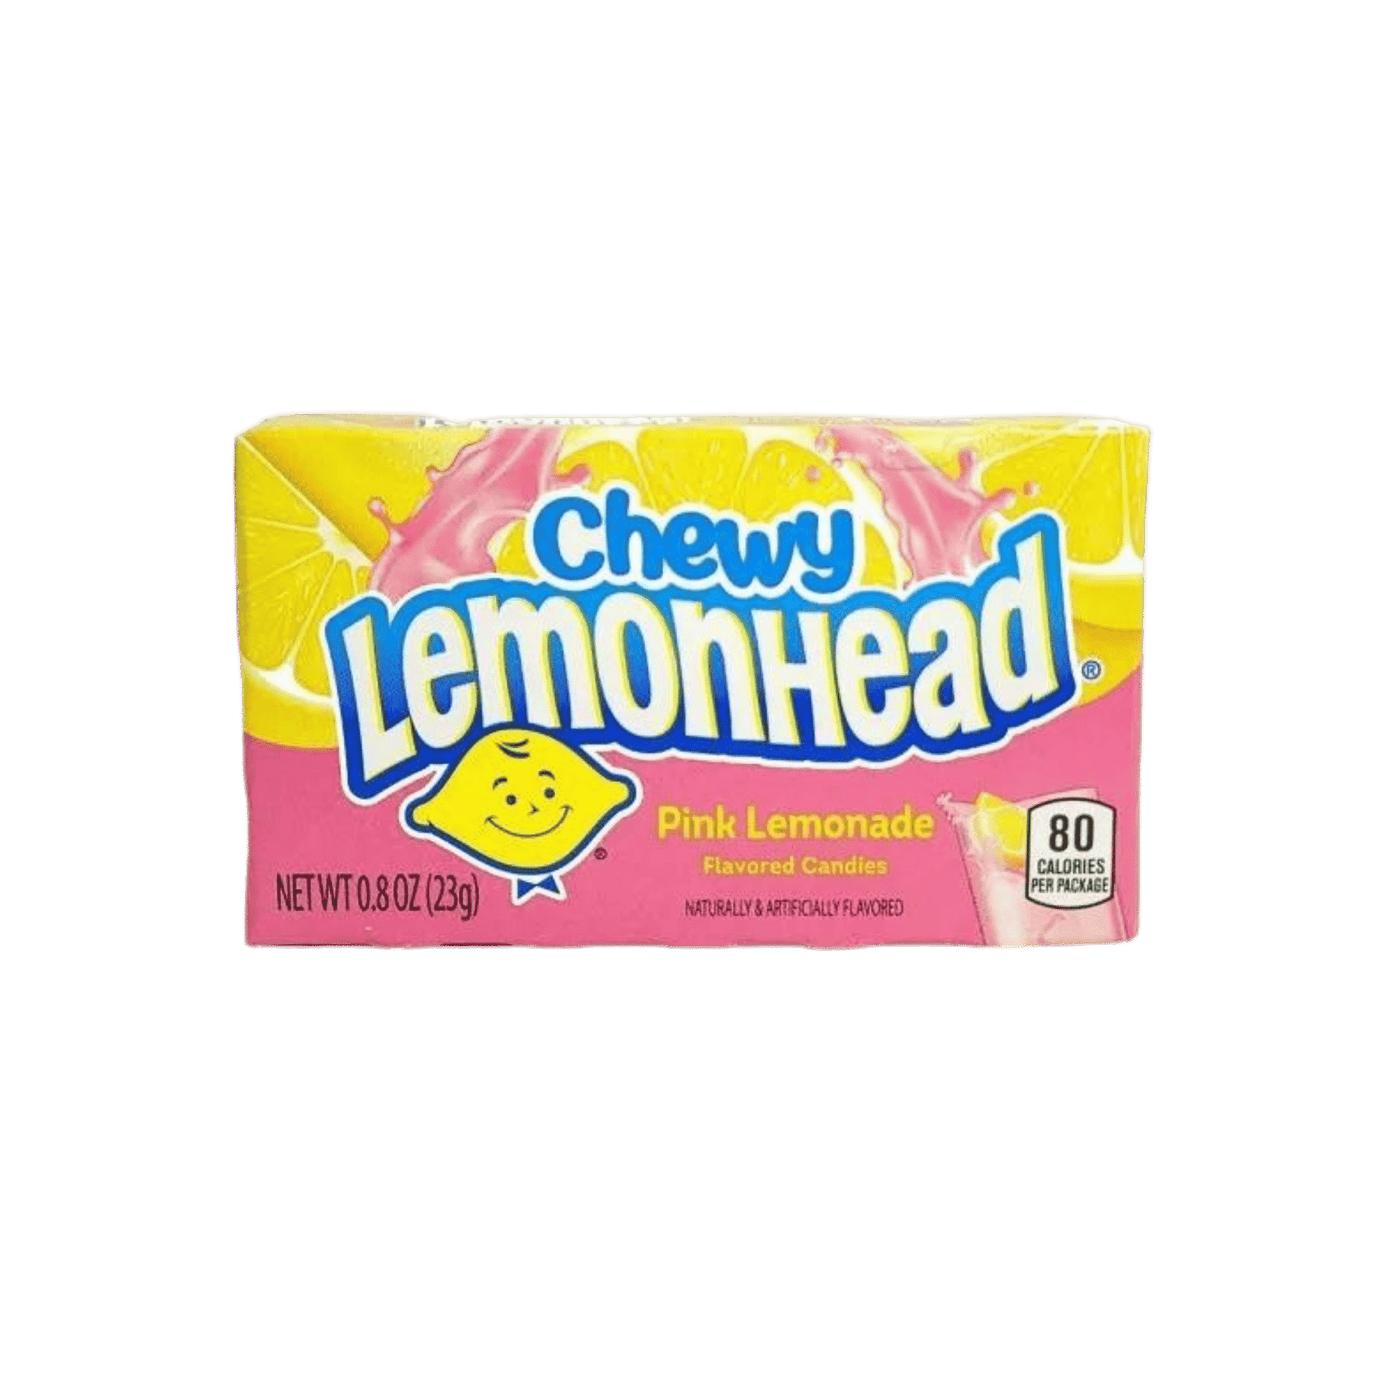 Chewy Lemonhead Pink Lemonade